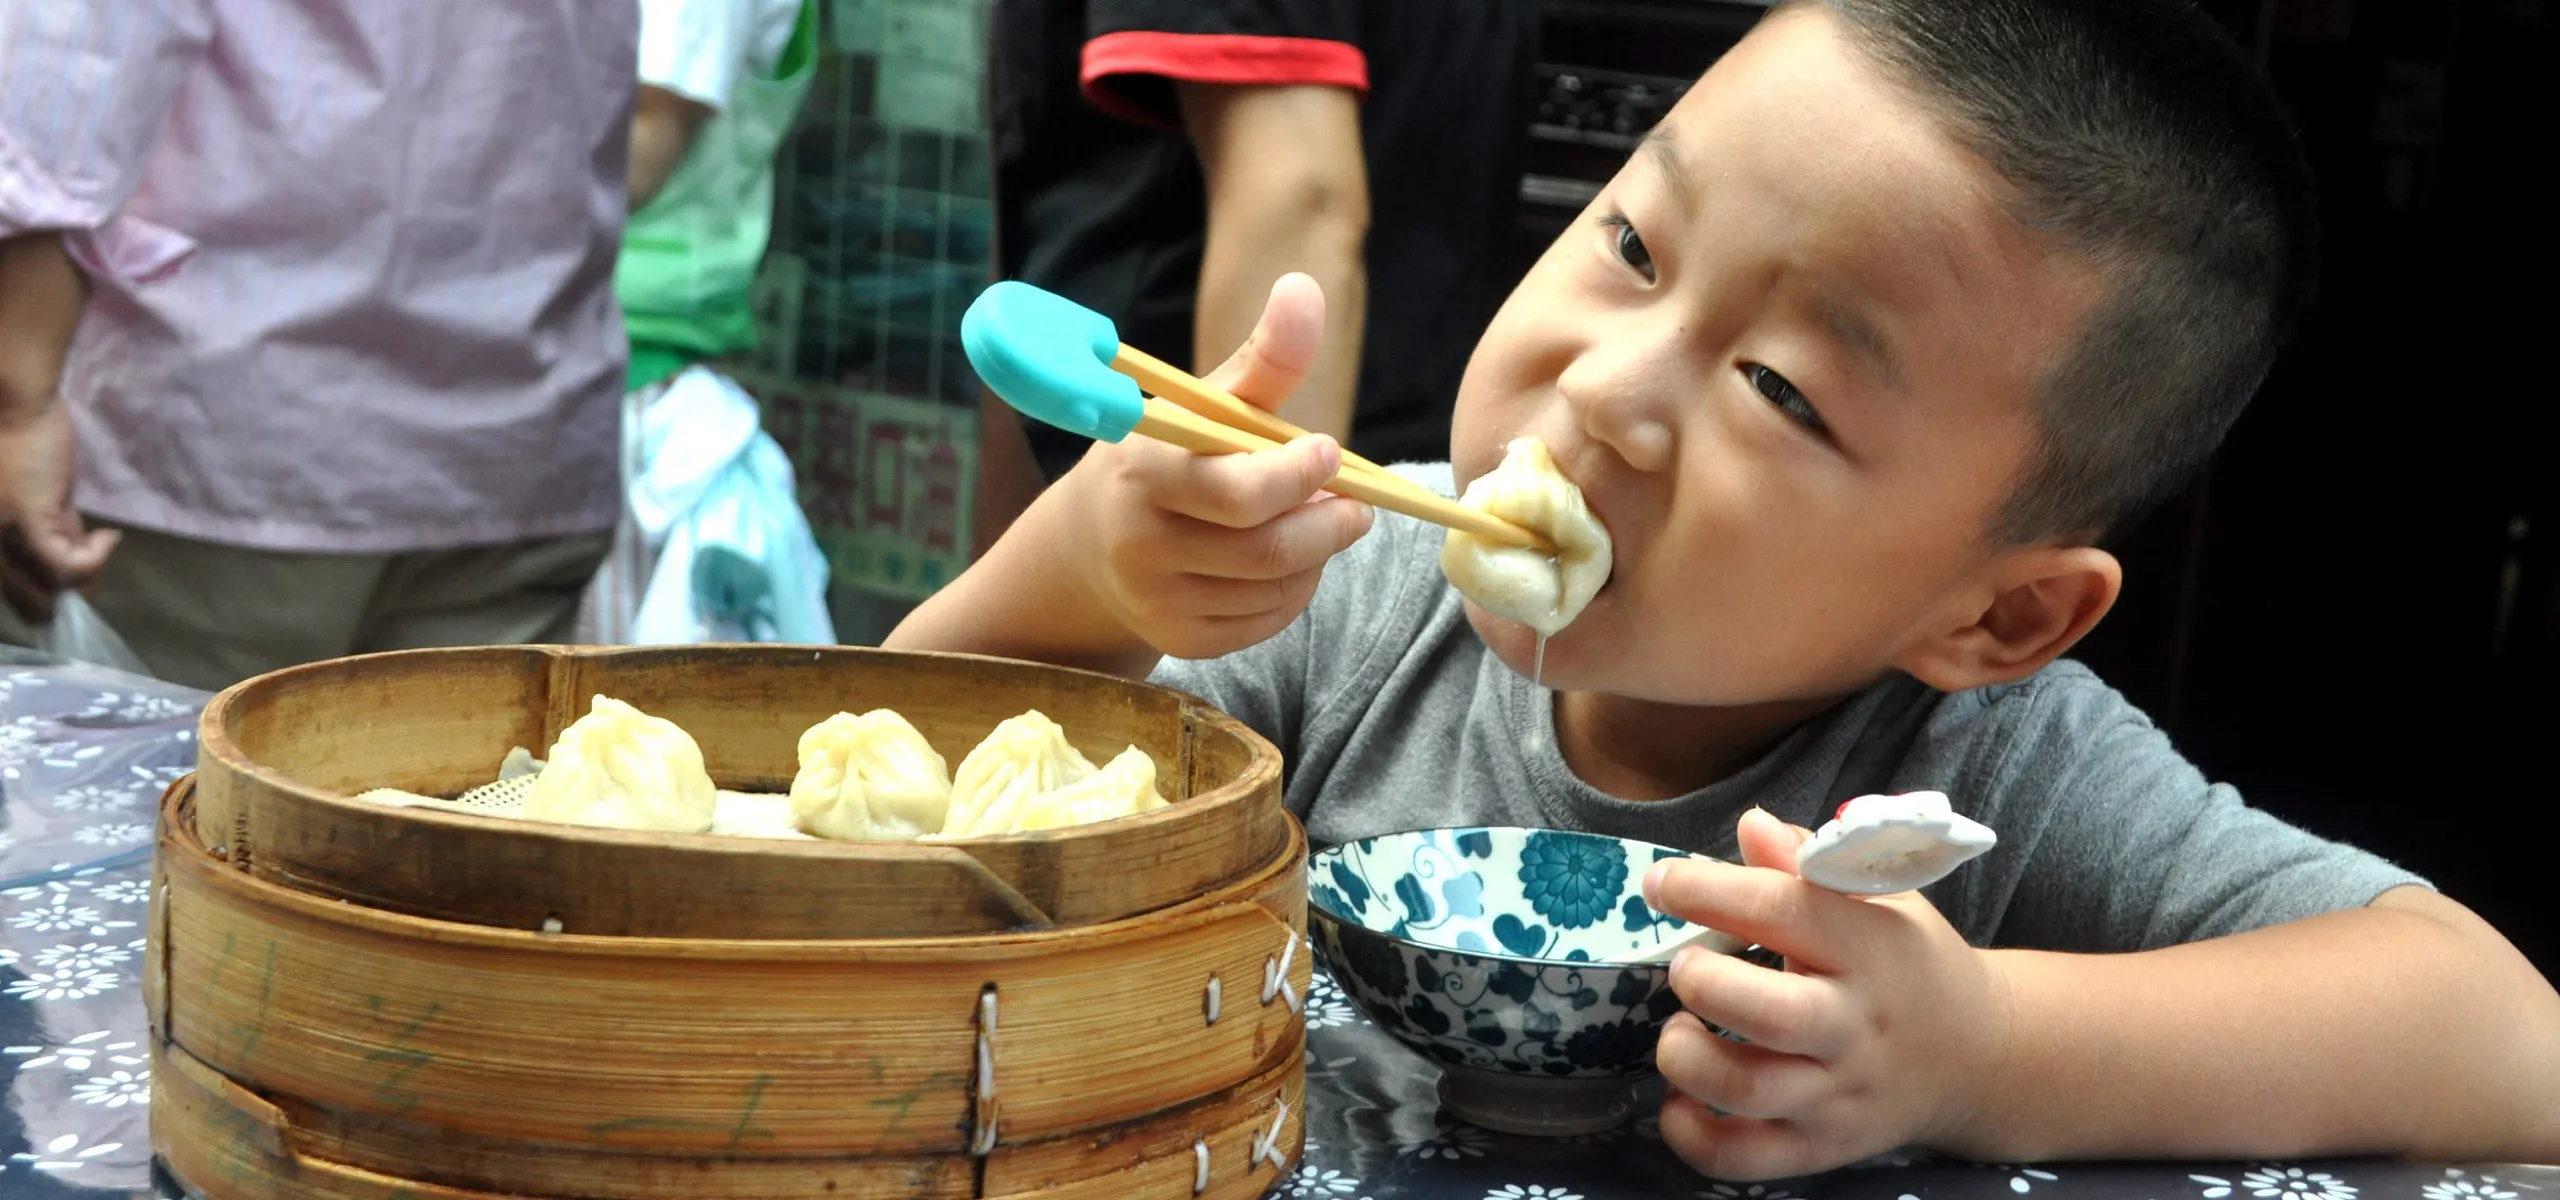 Boy eating xiao long bao